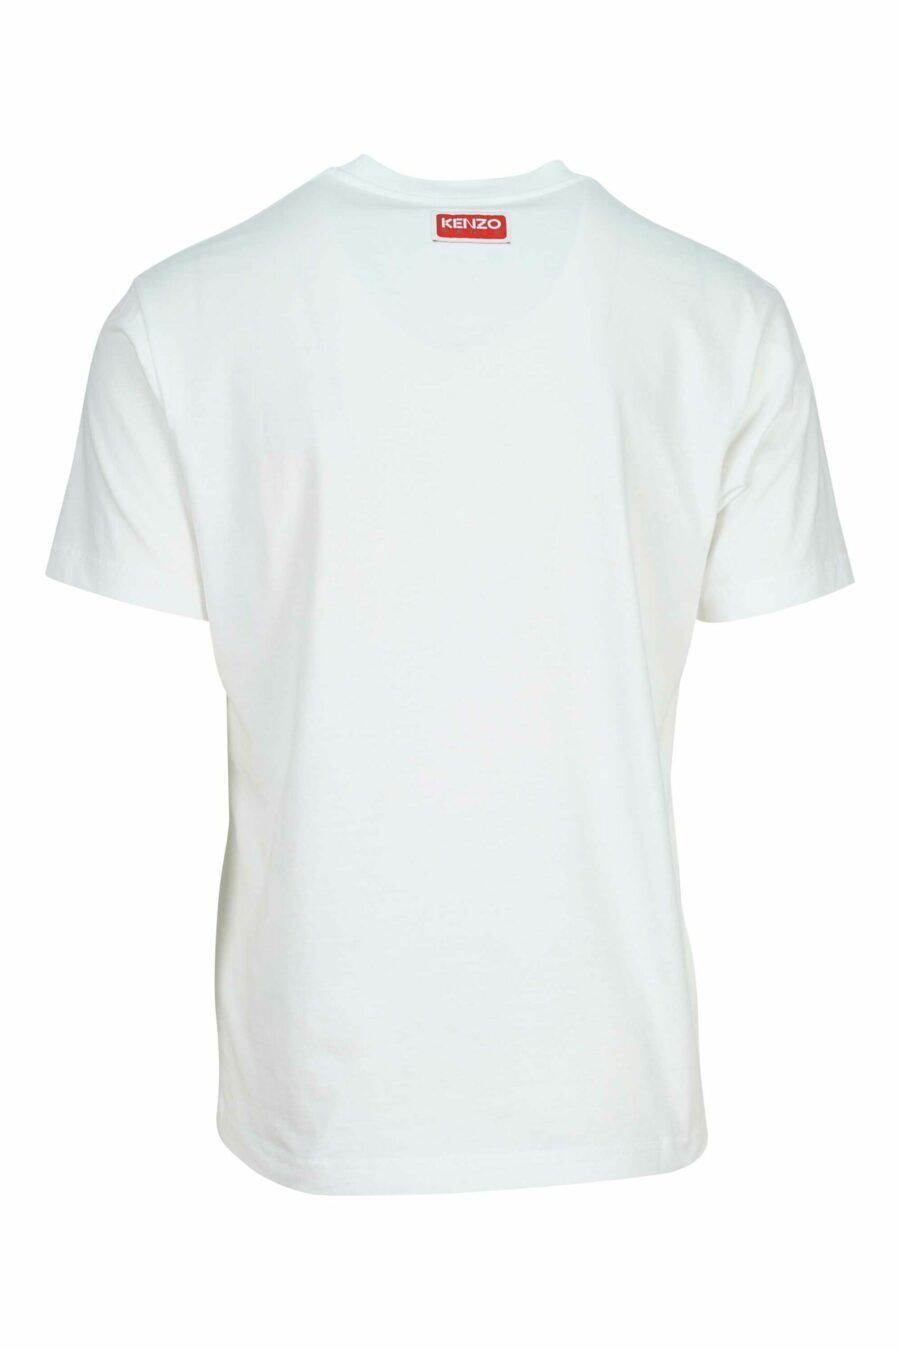 White T-shirt with maxilogo "kenzo elephant" - 3612230625501 1 scaled